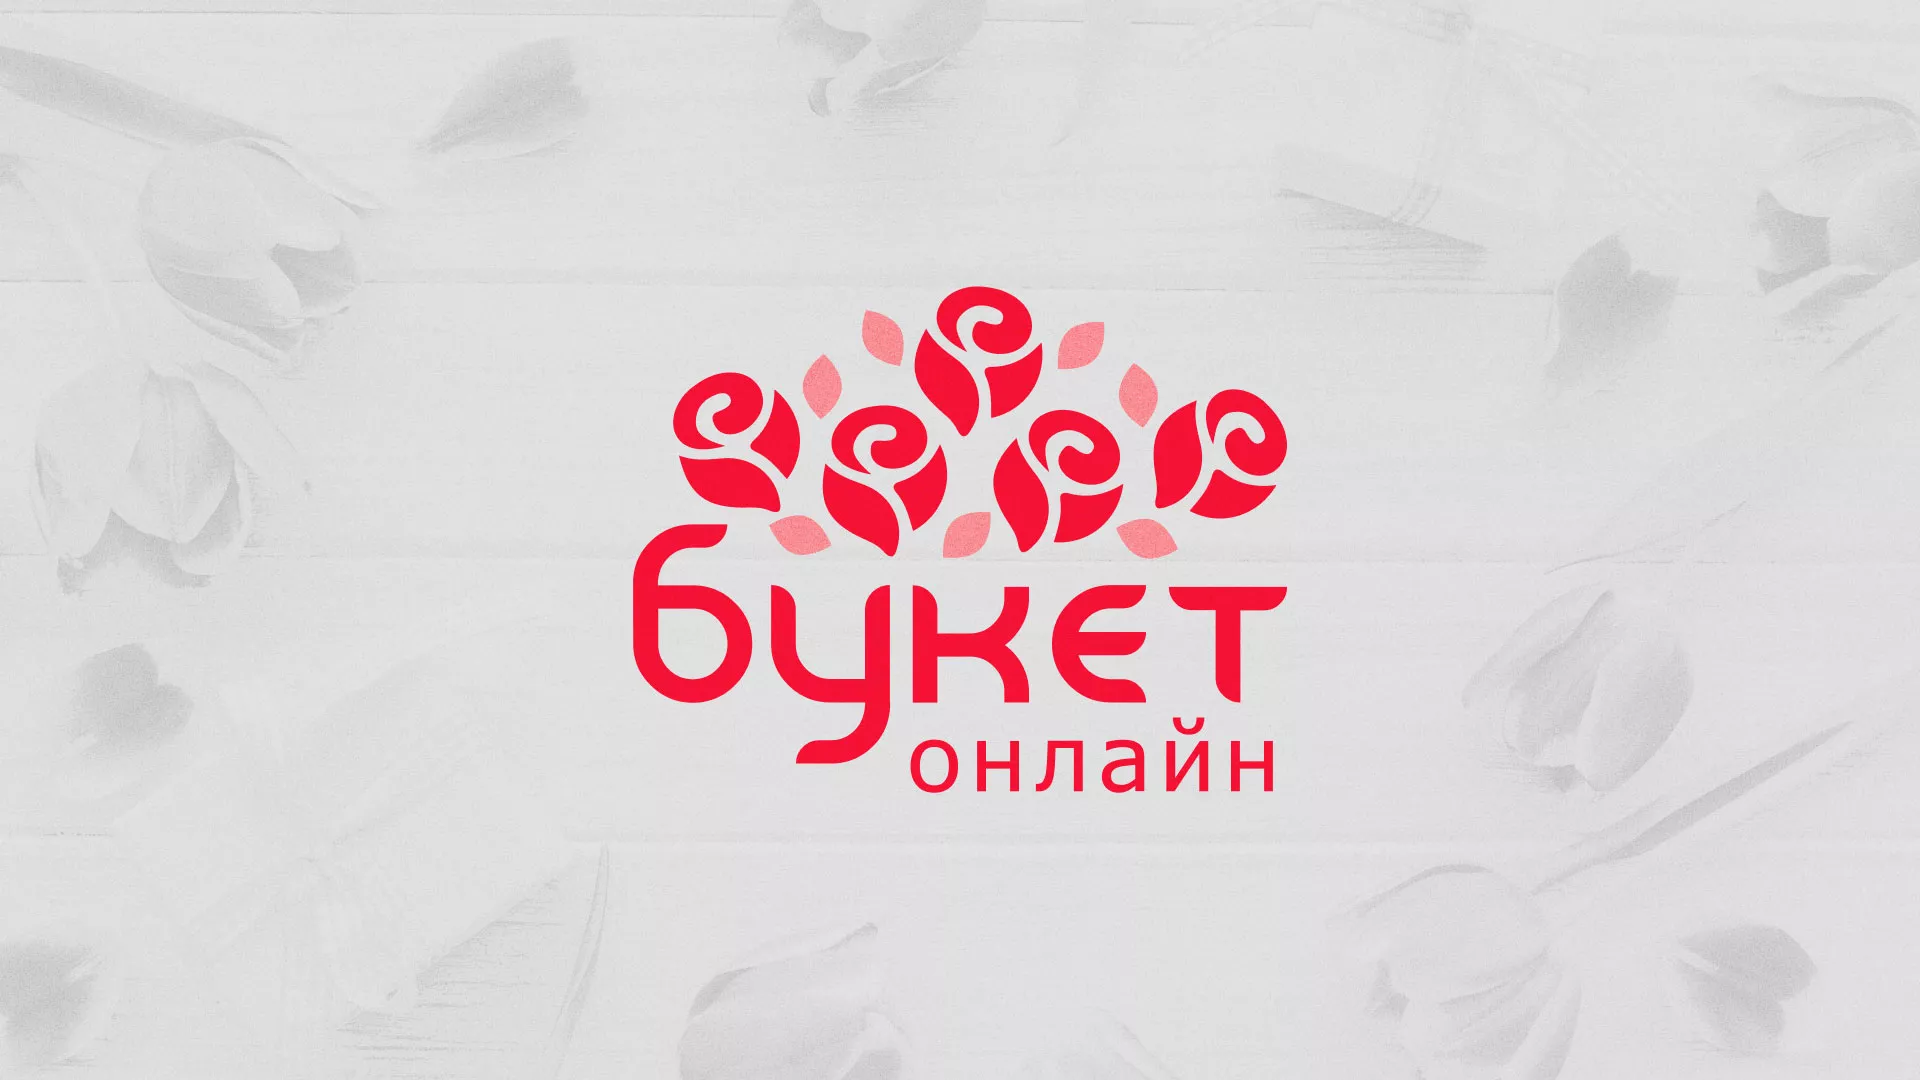 Создание интернет-магазина «Букет-онлайн» по цветам в Вологде